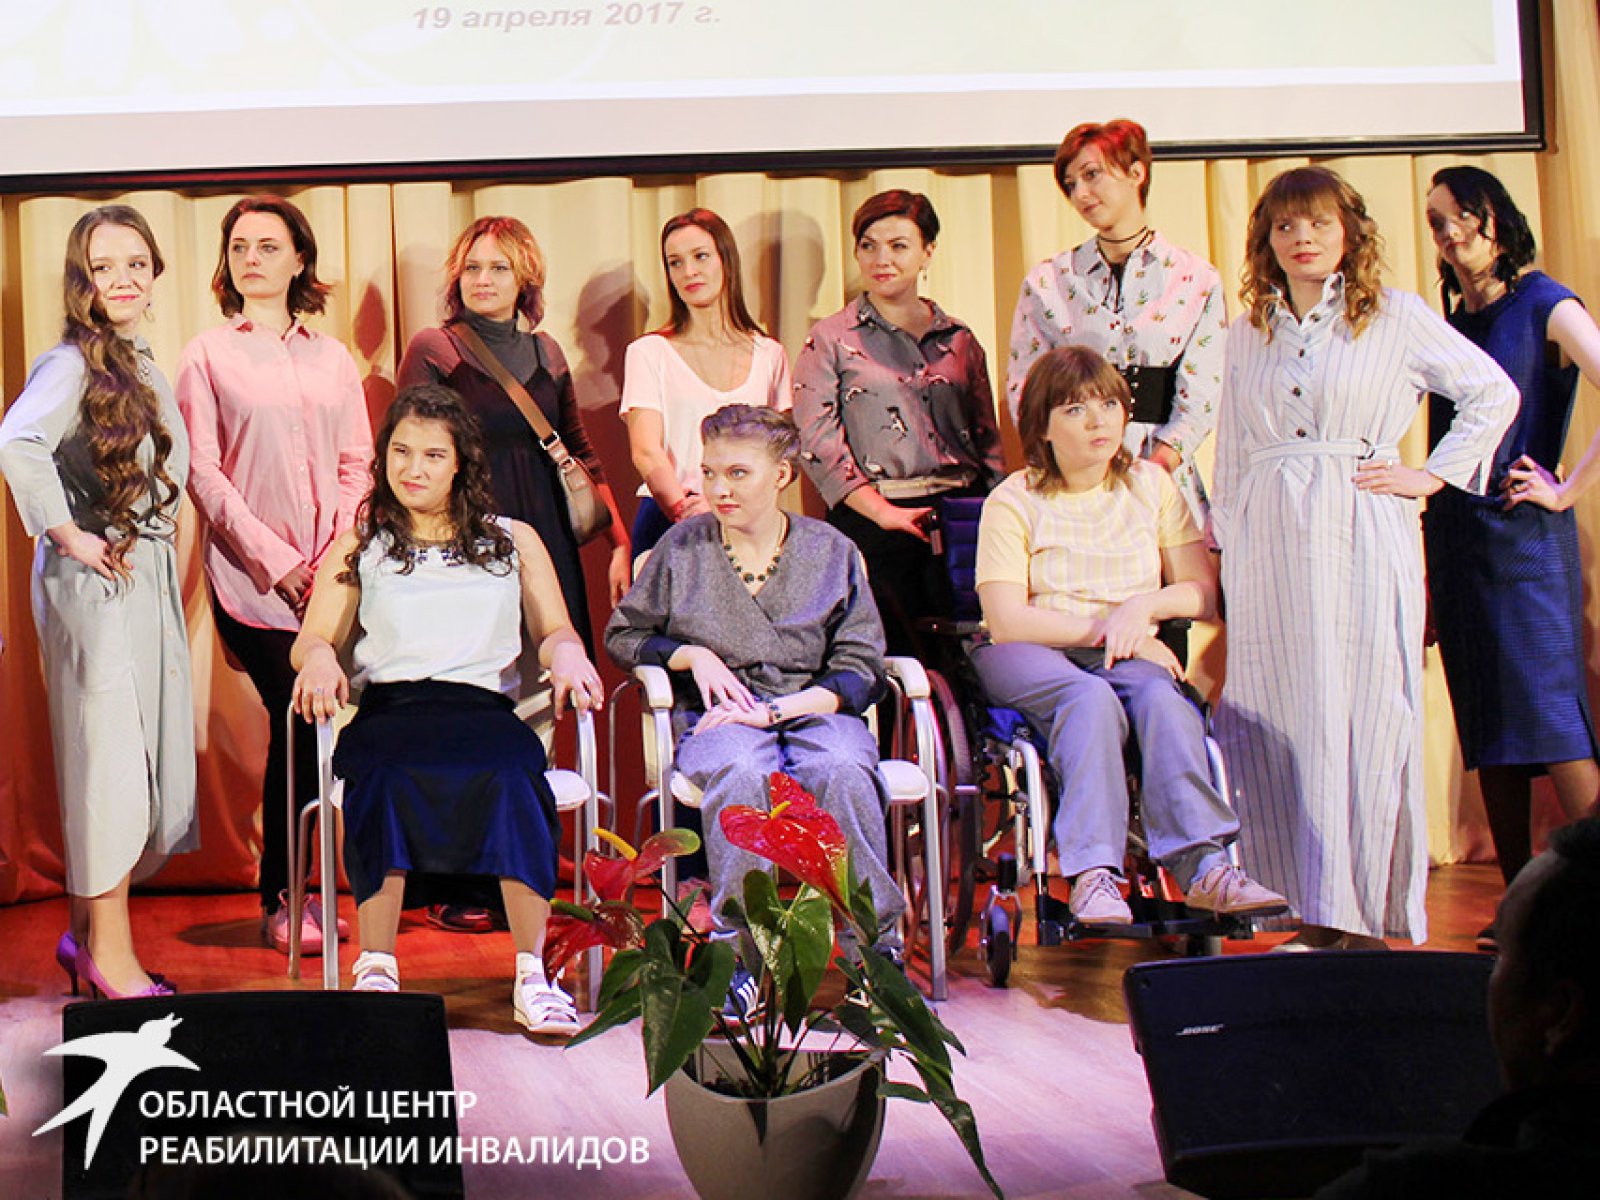 Первый в истории Областного центра реабилитации инвалидов Форум особенной красоты